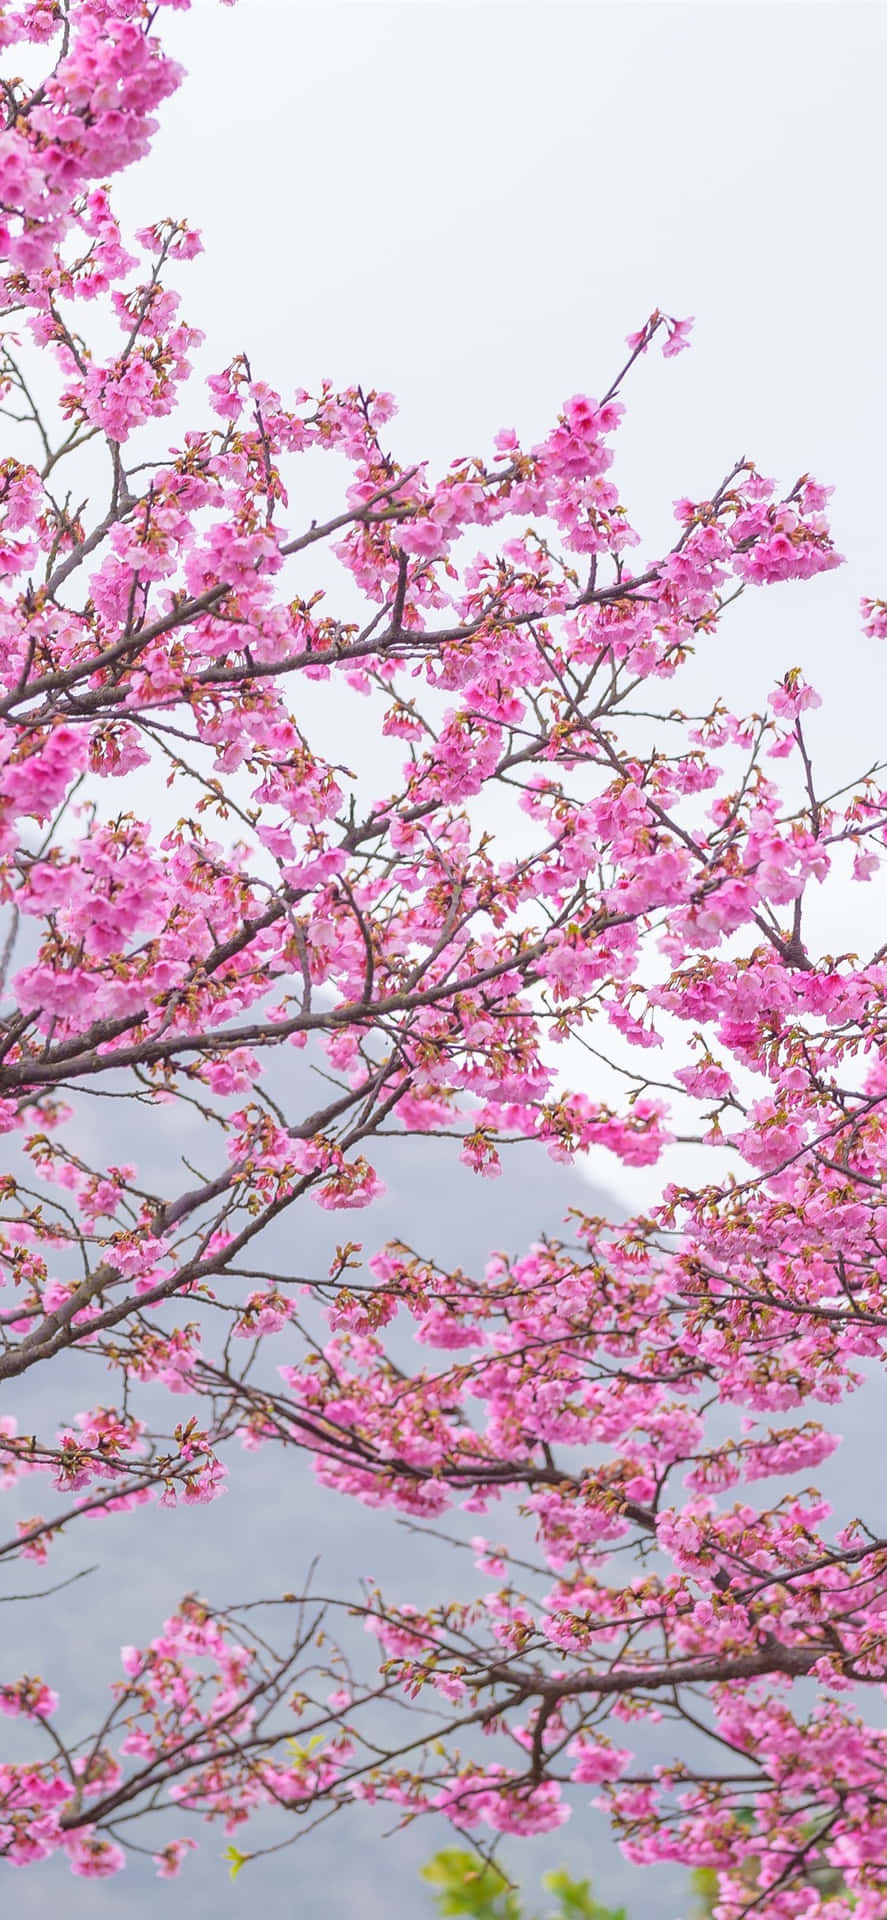 Et perfekt symbol på skønhed og fornyelse står en lyserød kirsebærplante højt i en have med kirsebærtræer. Wallpaper